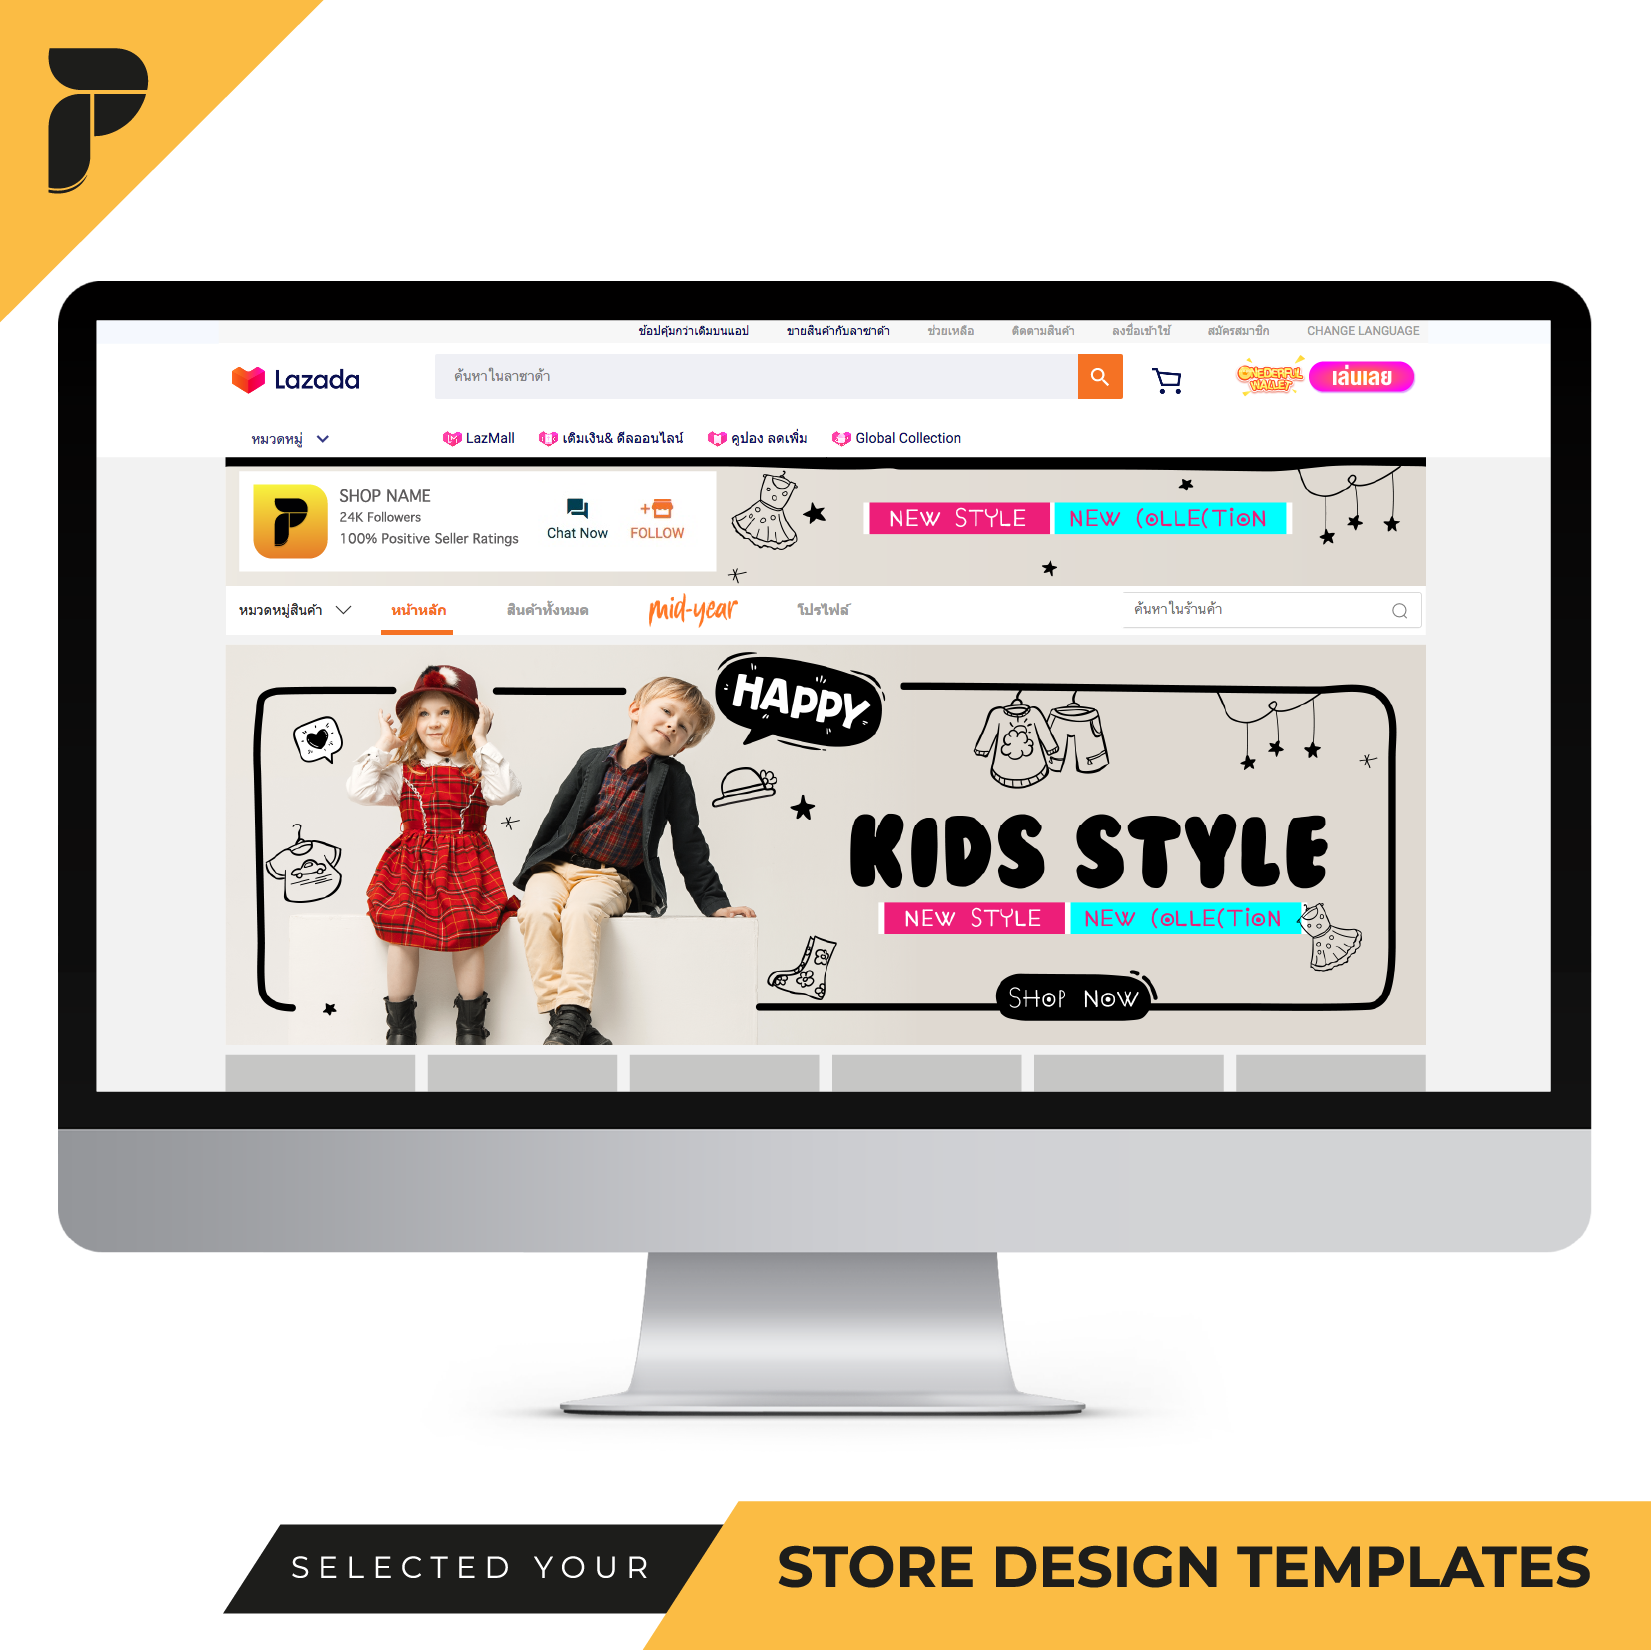 Store Design Template Banner by PathGraphic Studio - Fashion แบนเนอร์ตกแต่งร้าน แบนเนอร์สำเร็จรูป สำหรับตกแต่งหน้าร้านค้าออนไลน์